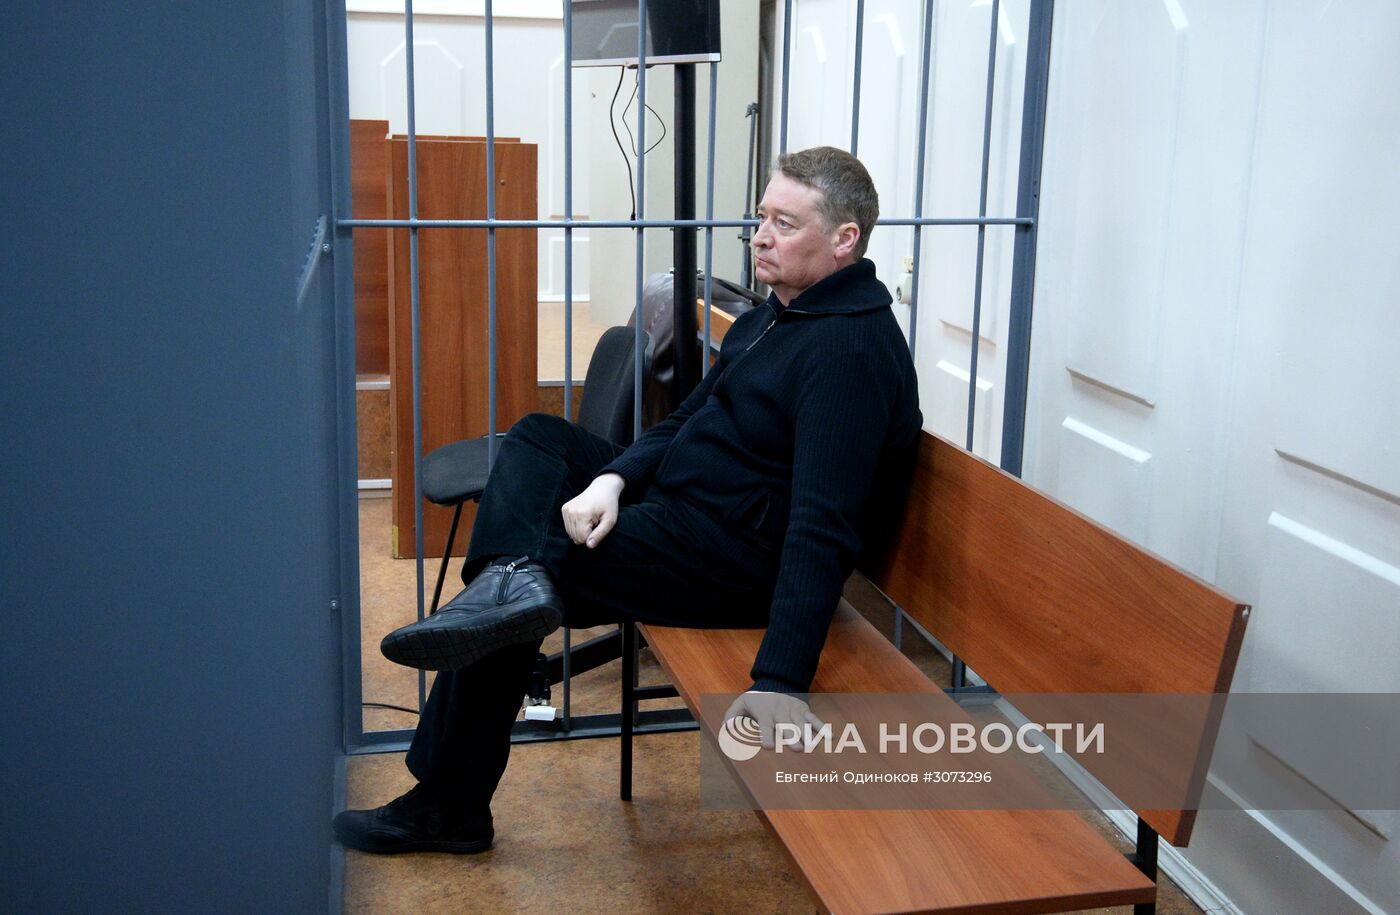 Рассмотрение ходатайства следствия об аресте экс-главы Марий Эл Л. Маркелова